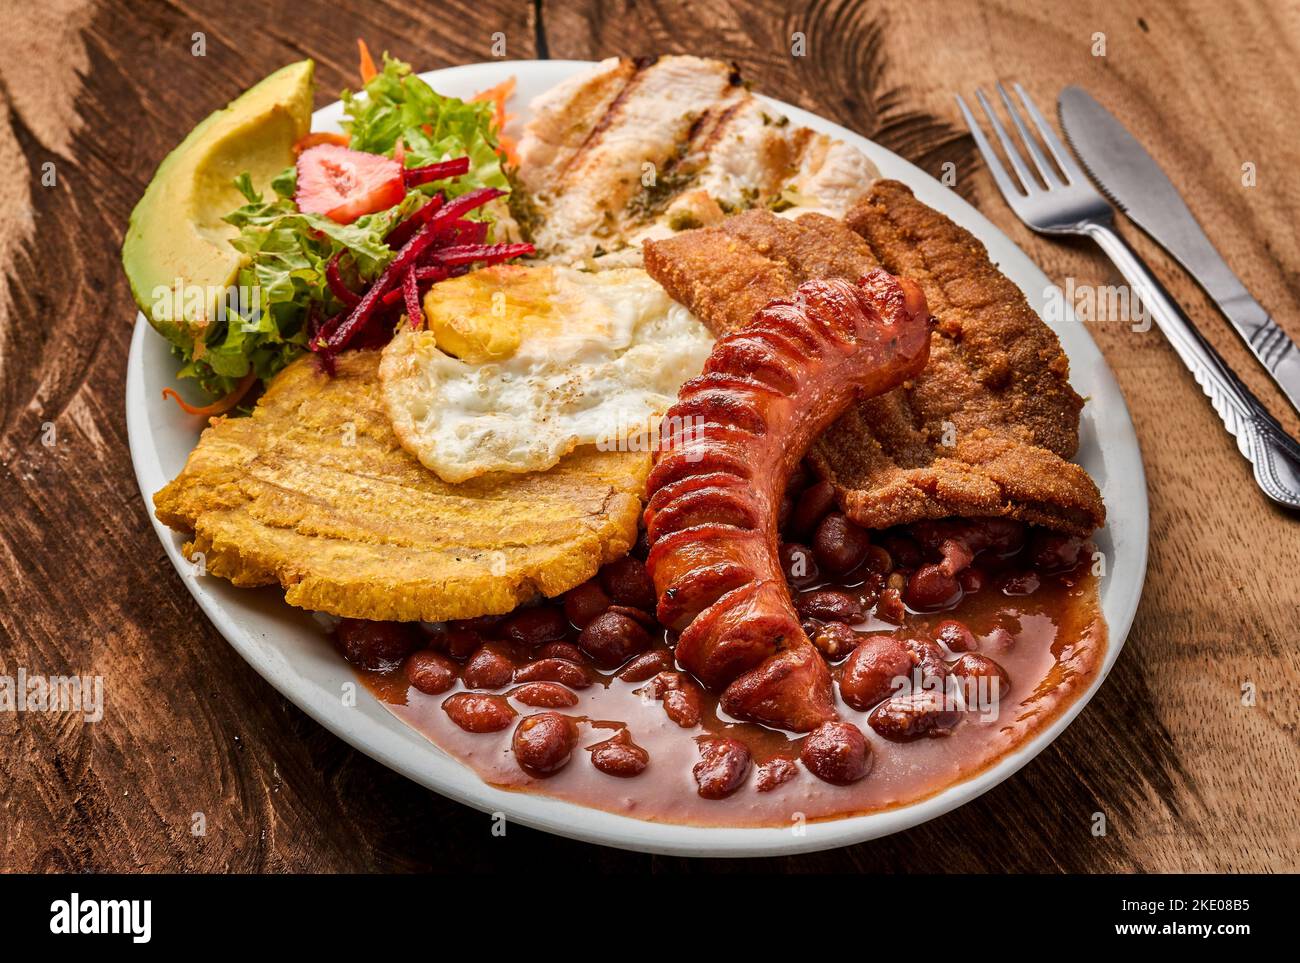 Vue de dessus d'une assiette blanche avec Bandeja paisa avec un œuf, des saucisses et une salade de légumes sur une table en bois Banque D'Images